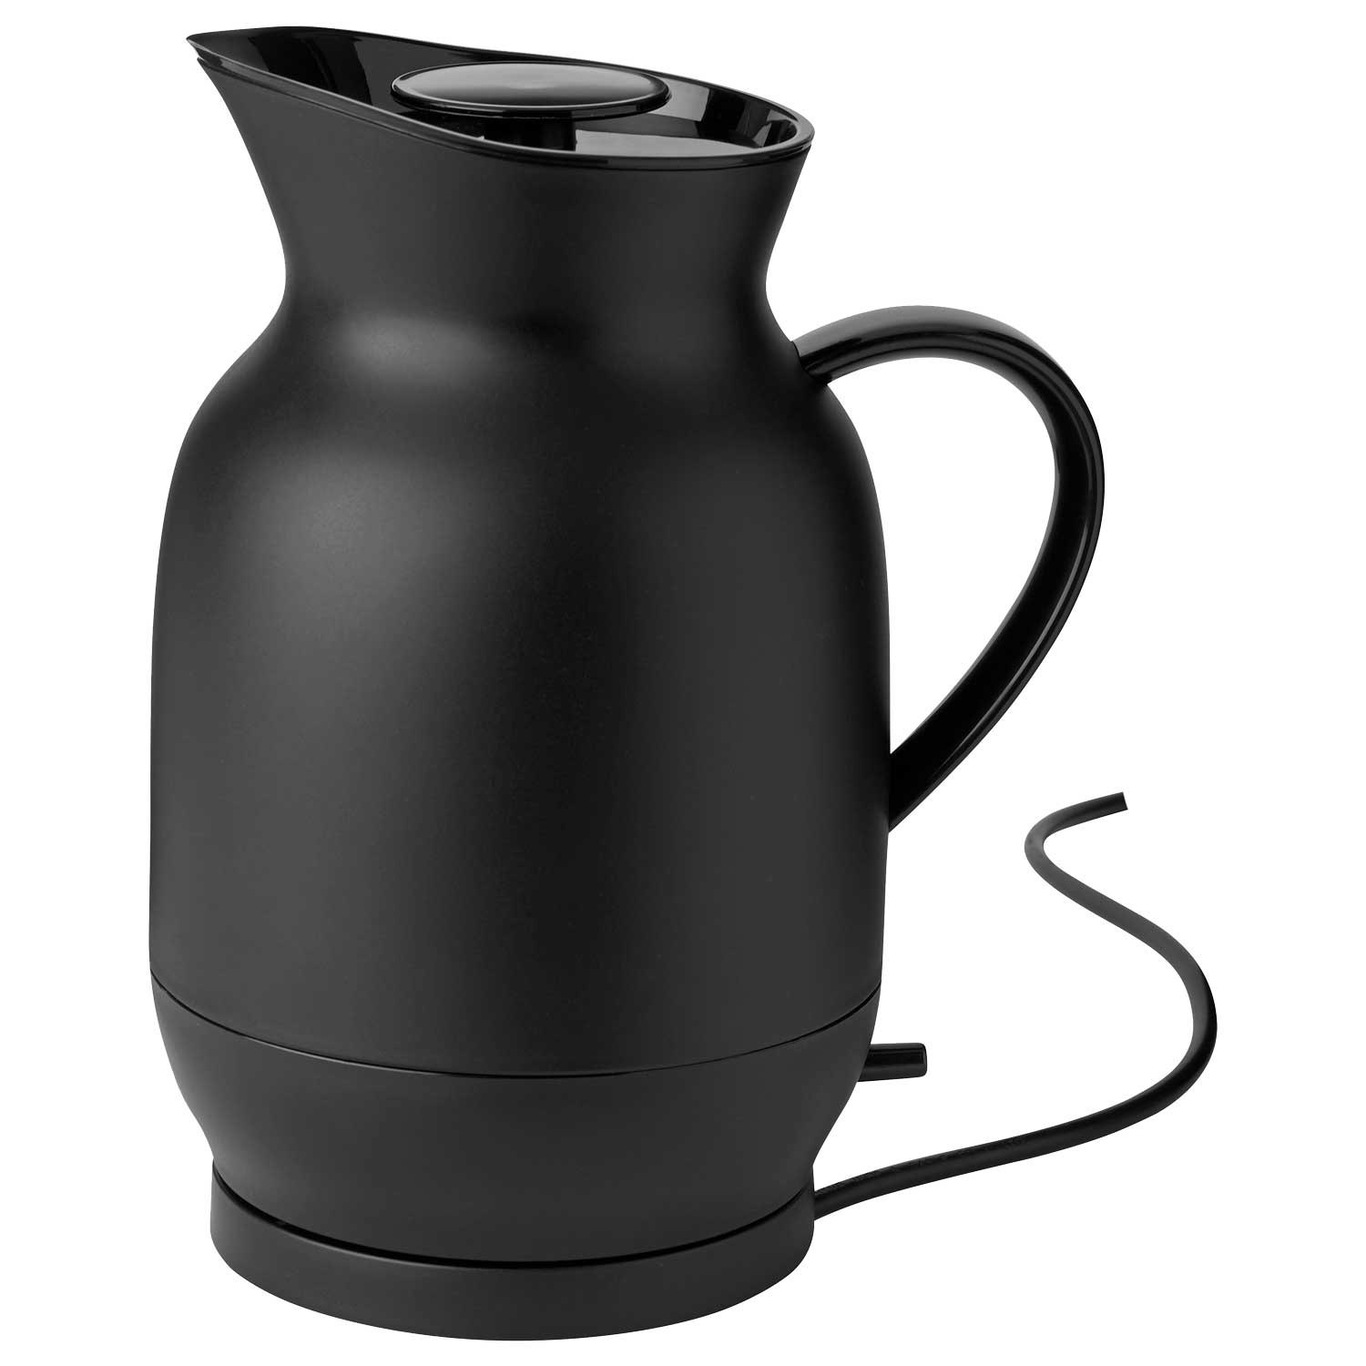 Amphora Wasserkocher 1,2 L, Soft Black